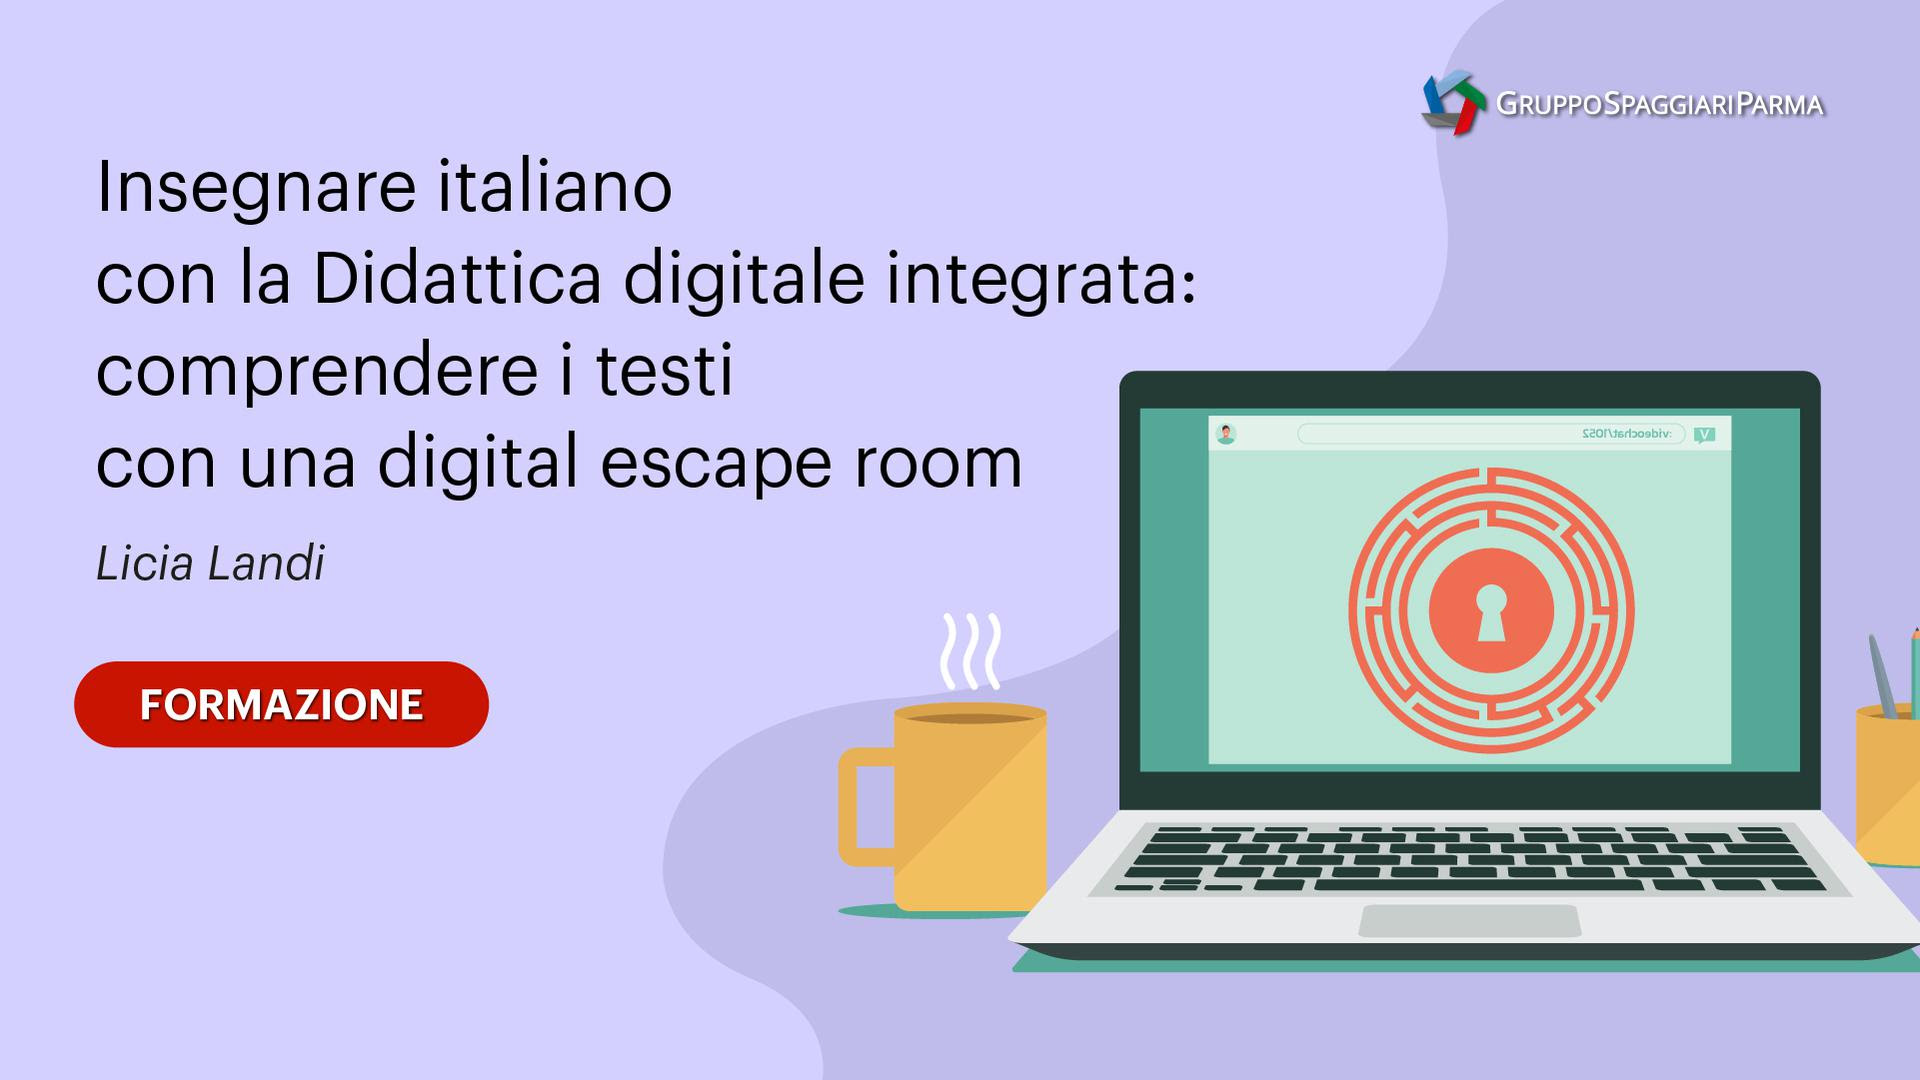 Insegnare italiano con la Didattica digitale integrata: comprendere i testi con una digital escape room